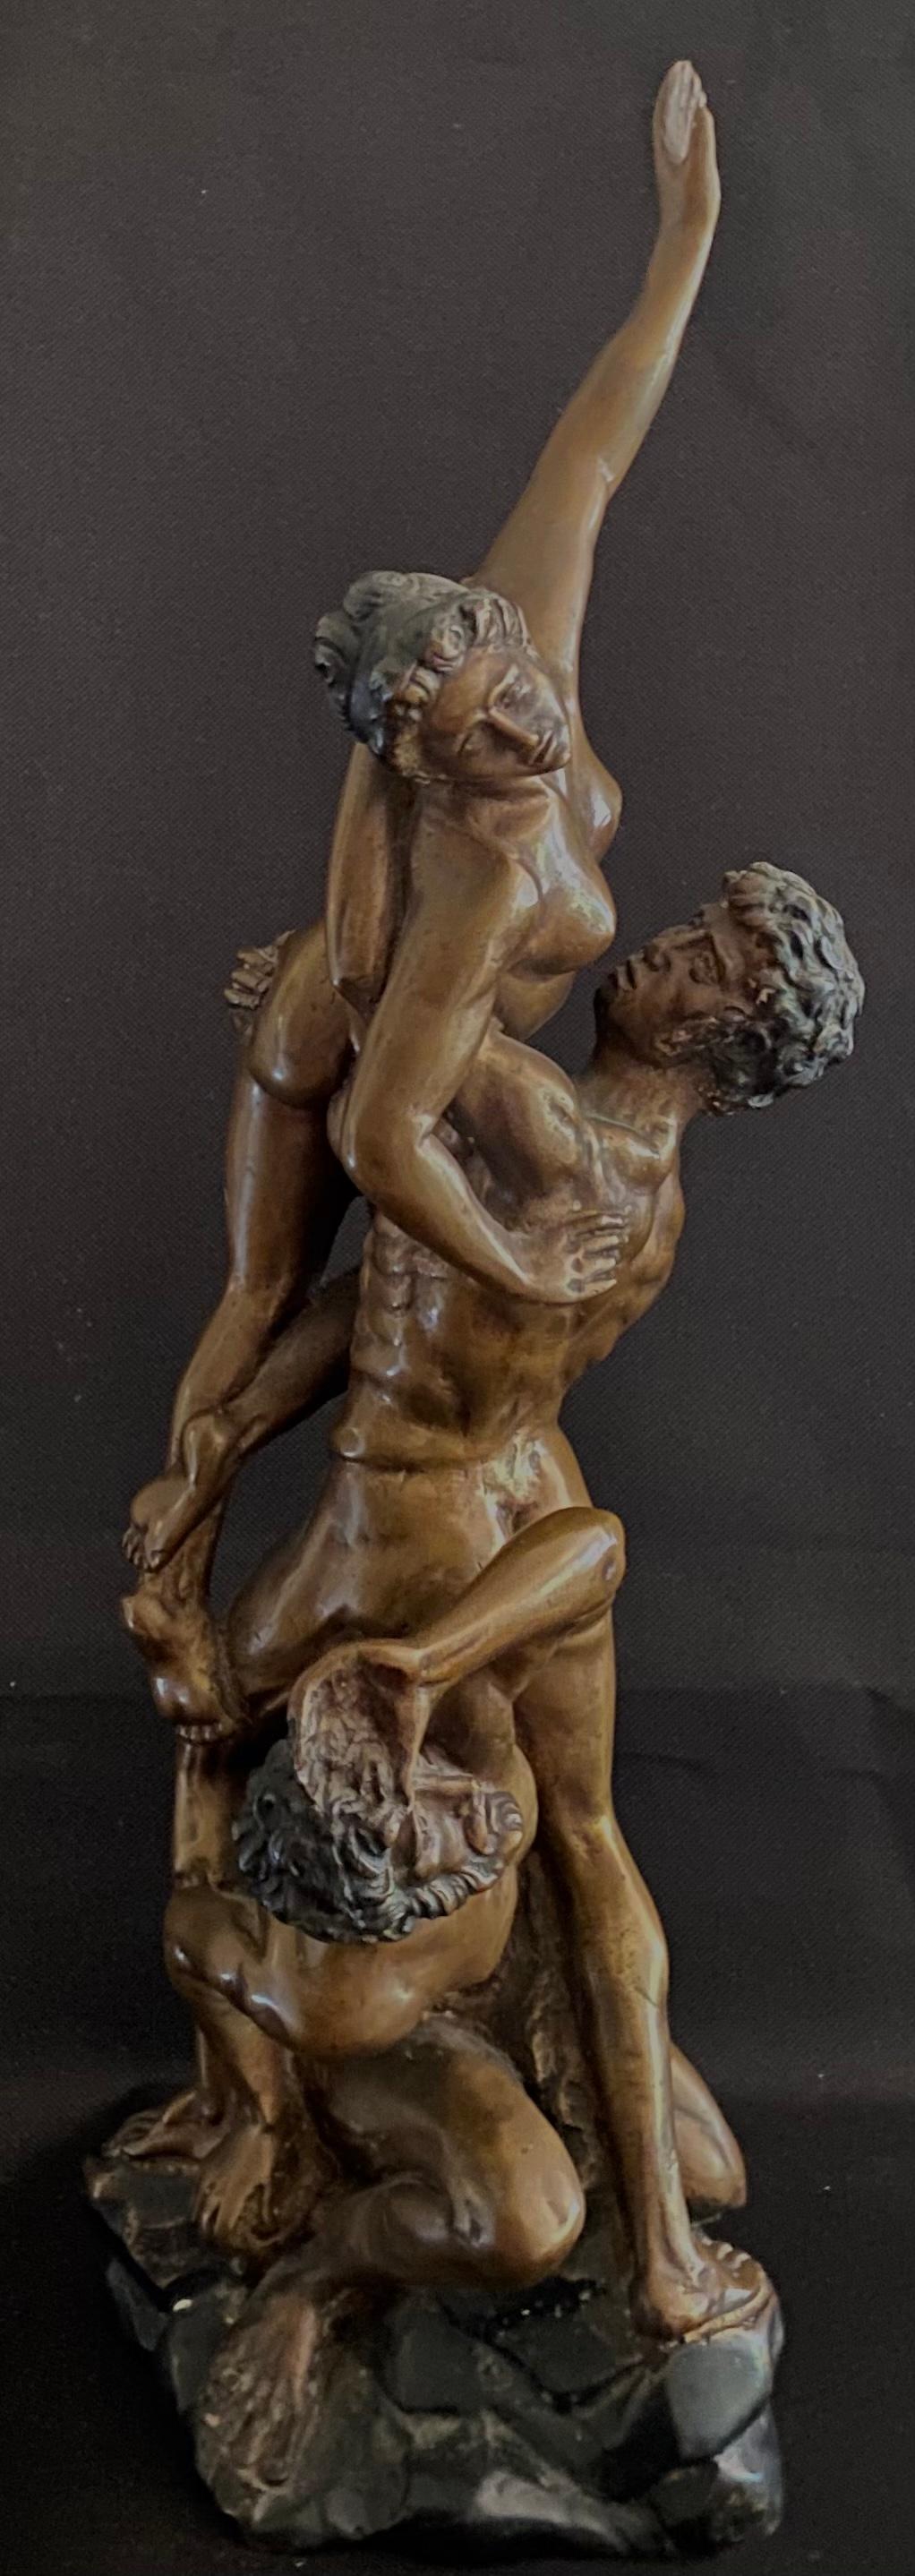 “Enlevement des Sabines” - Sculpture by Marius Jean Antonin Mercié